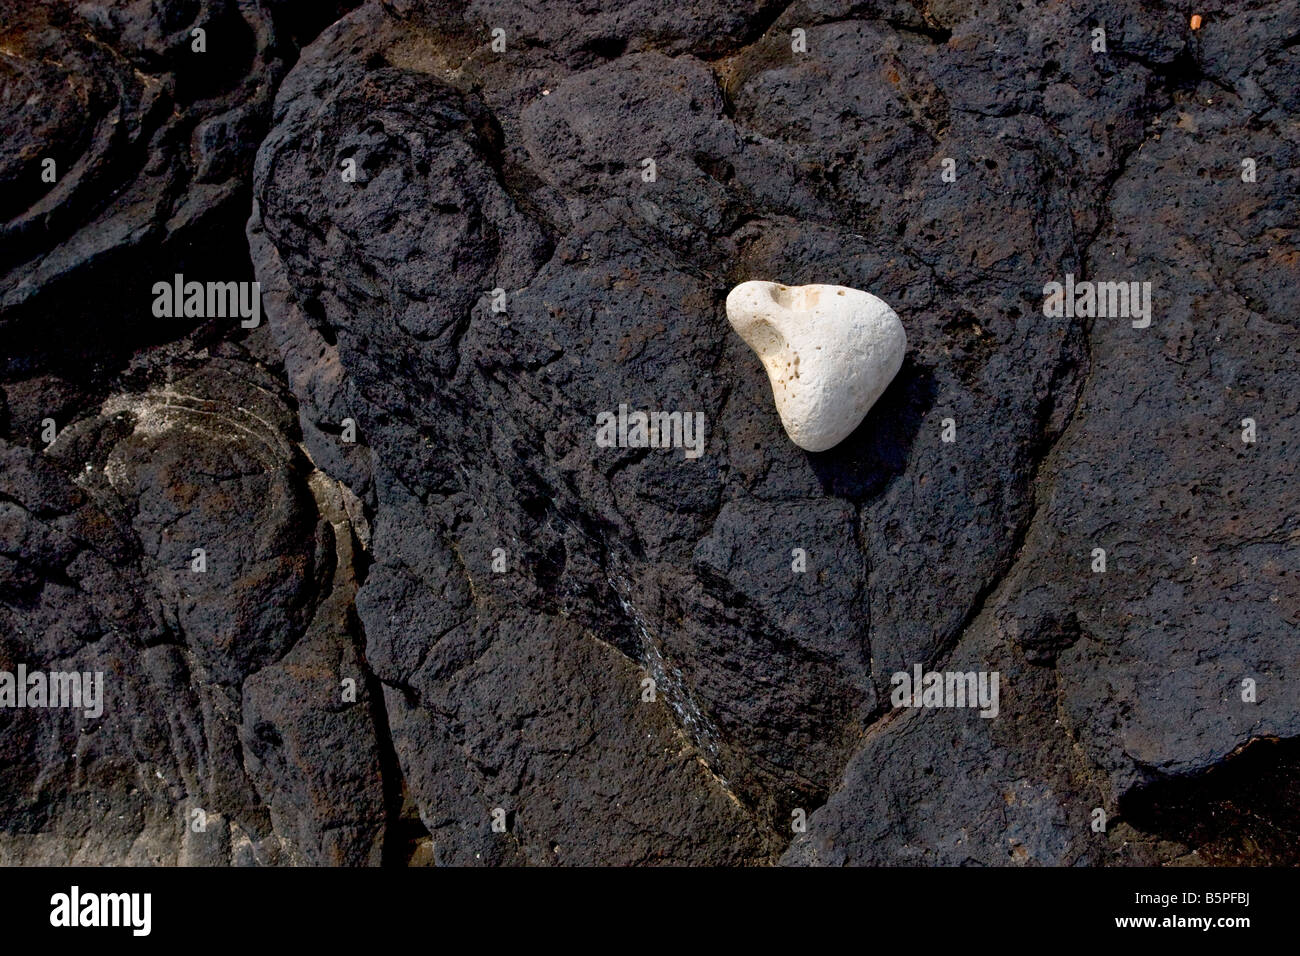 White rock found on black lava rock on Kauai Stock Photo